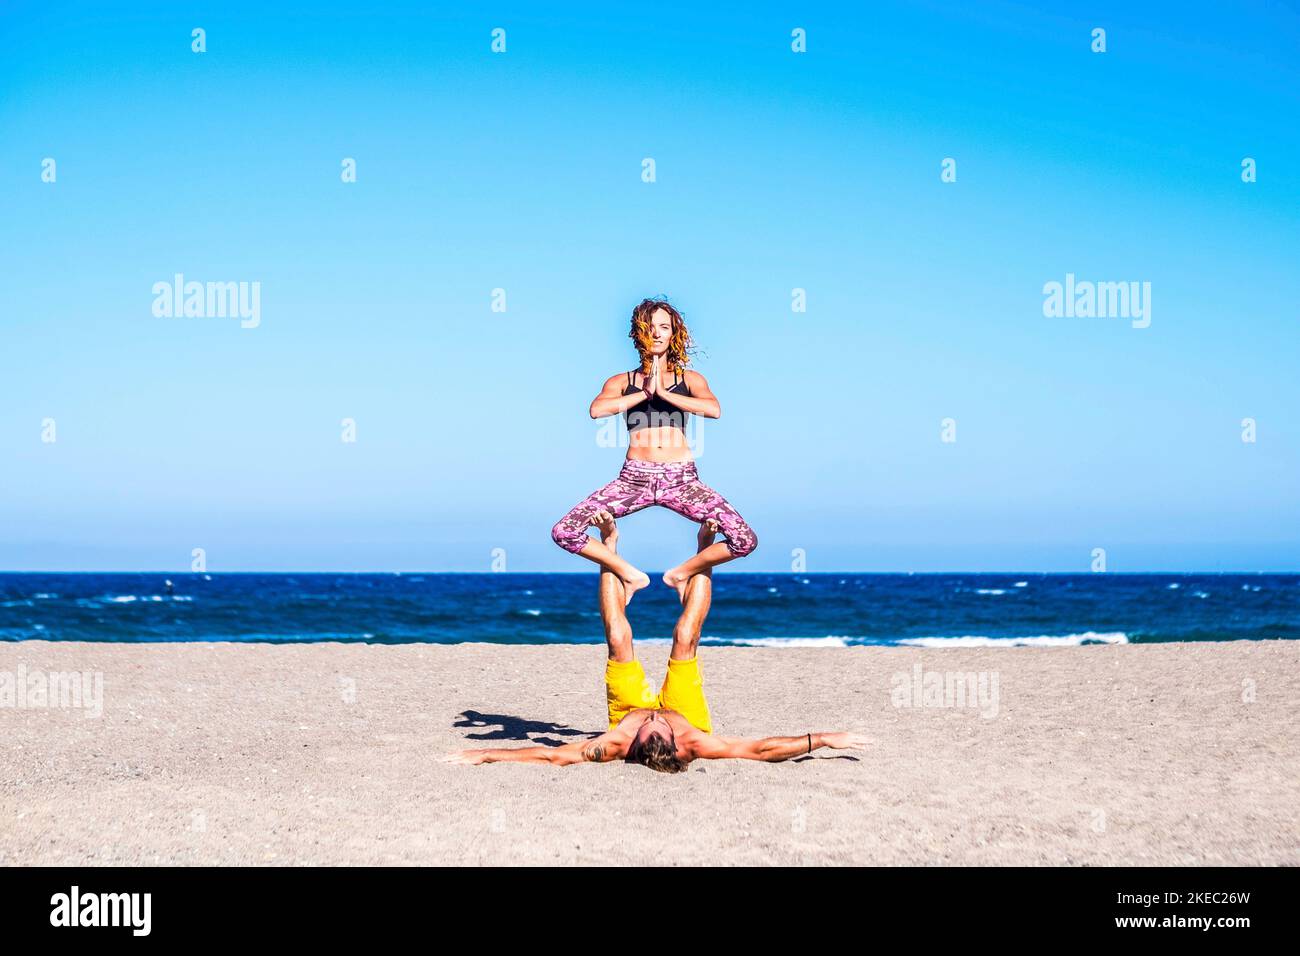 coppia di due adulti sani e in forma fisica che fanno esercizi insieme alla spiaggia sulla sabbia - due persone che fanno acro yoga Foto Stock